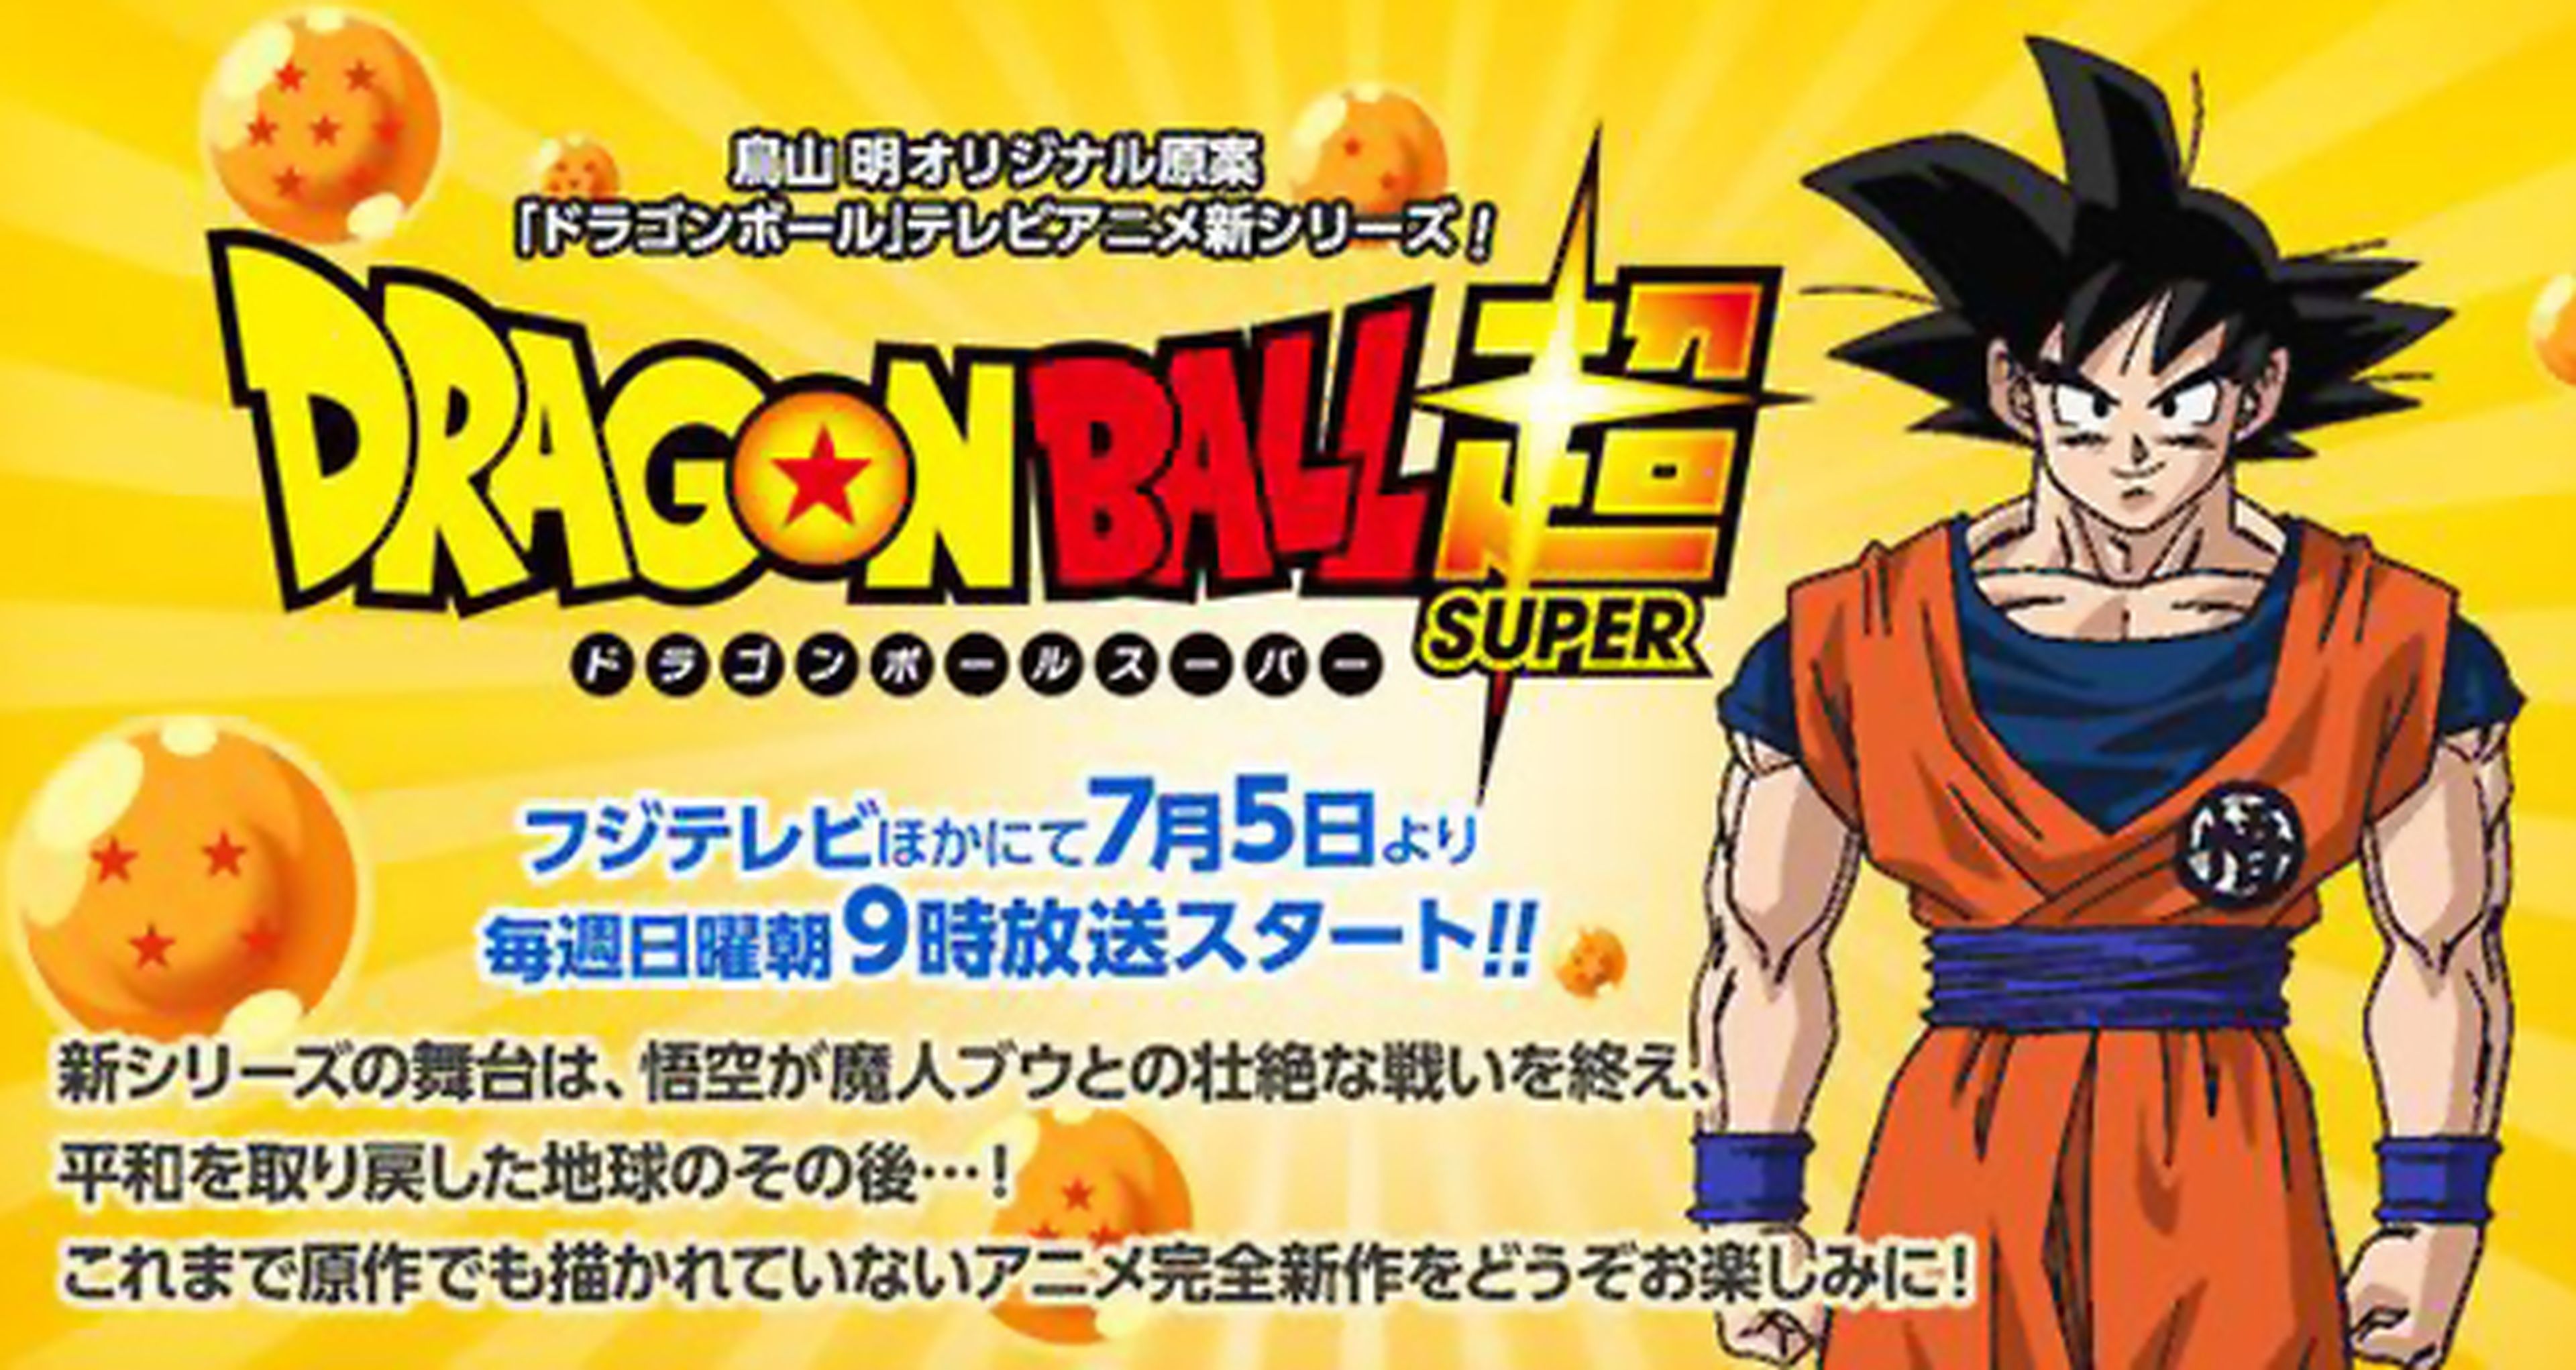 Dragon Ball Super ya tiene logo